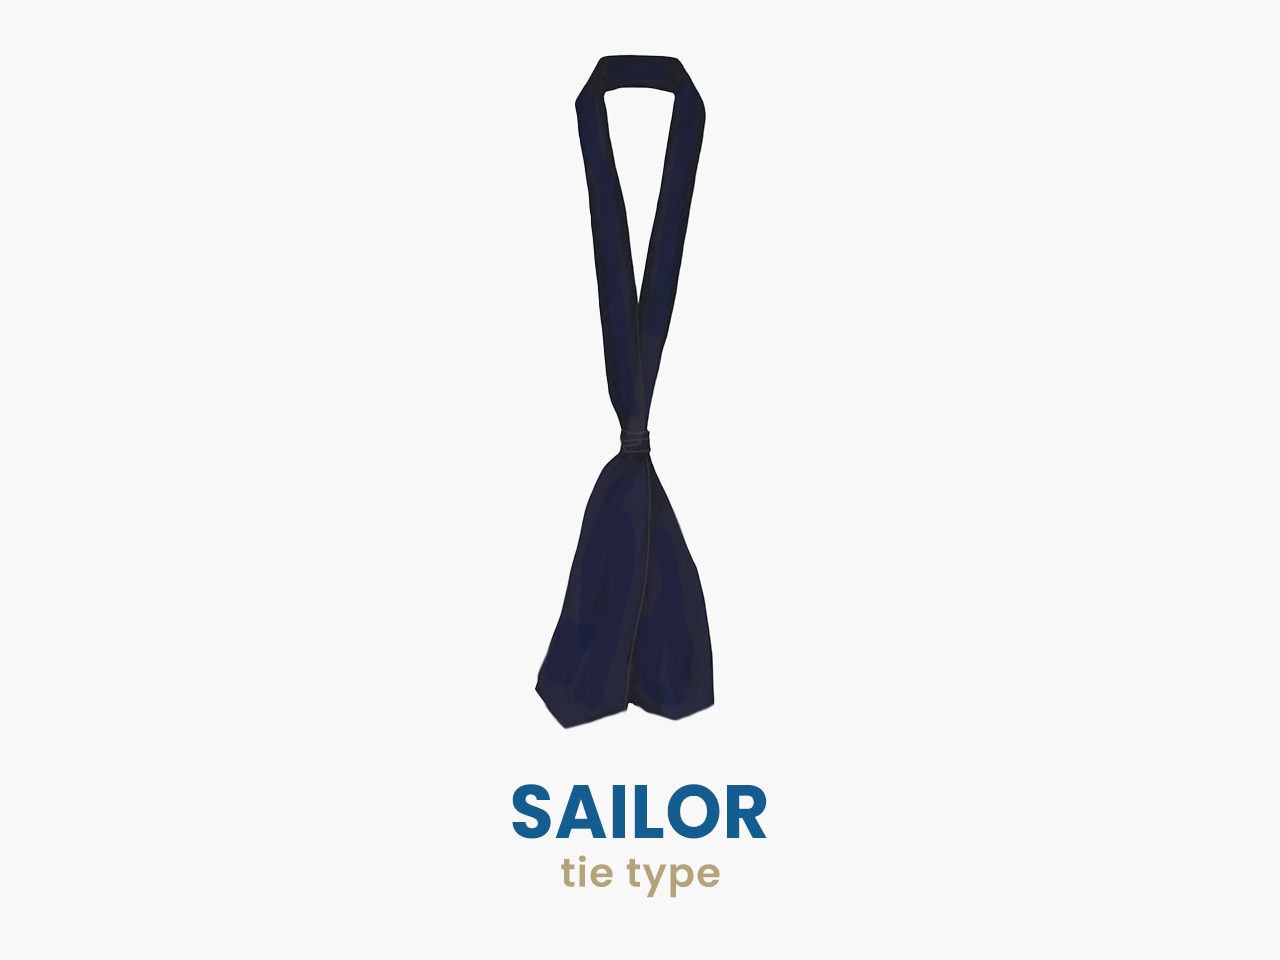 sailor tie